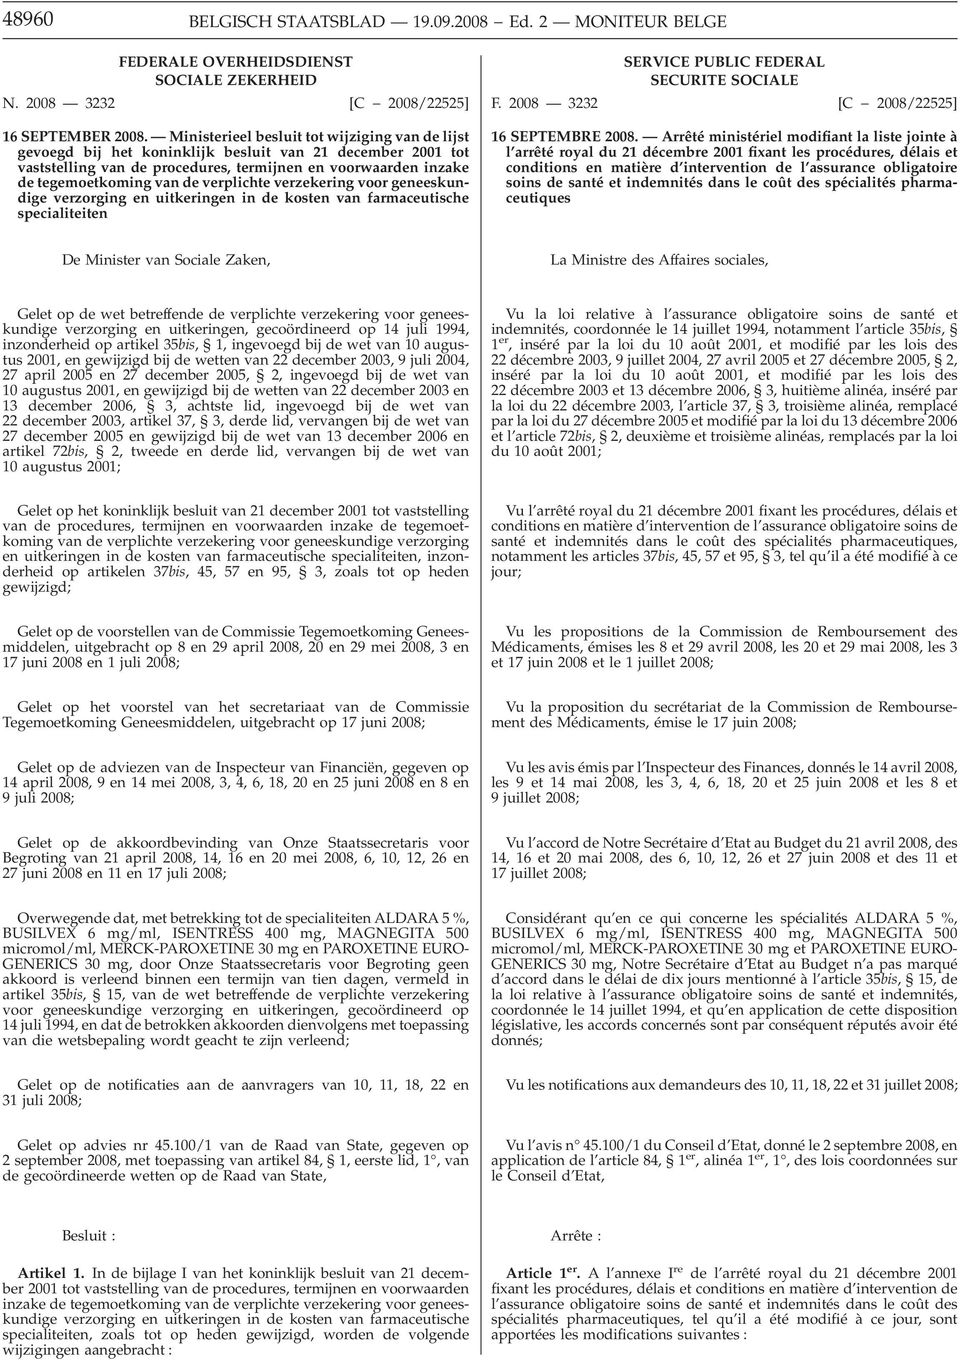 Ministerieel besluit tot wijziging van de lijst gevoegd bij het koninklijk besluit van 21 december 2001 tot vaststelling van de procedures, termijnen en voorwaarden inzake de tegemoetkoming van de